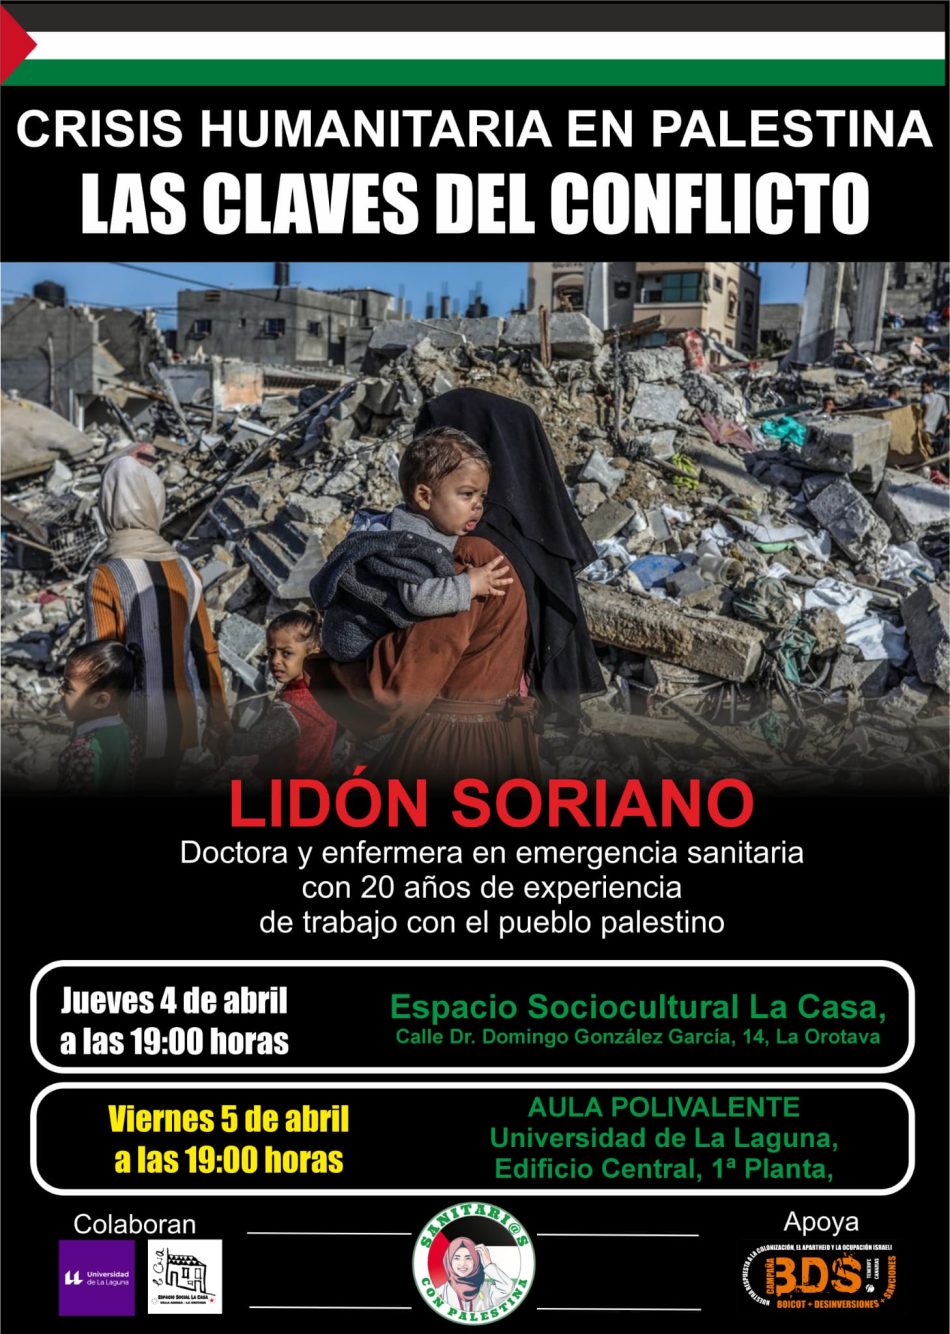 Crisis Humanitaria en Palestina: charlas 4 y 5 de abril en La Laguna (Santa Cruz de Tenerife)